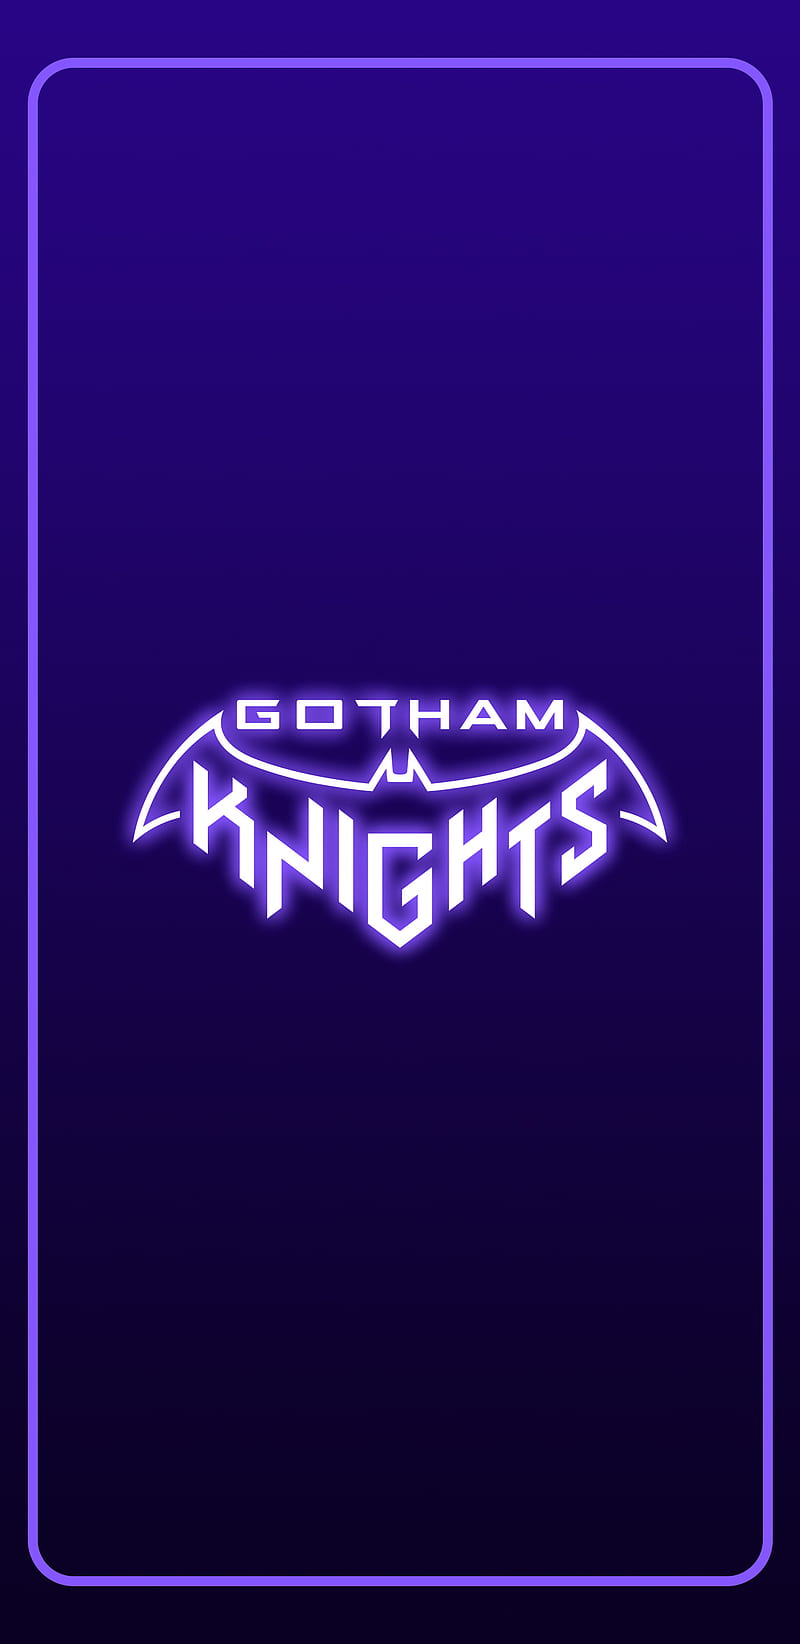 Gotham Knights Video Game Wallpaper 4k Ultra HD ID11396